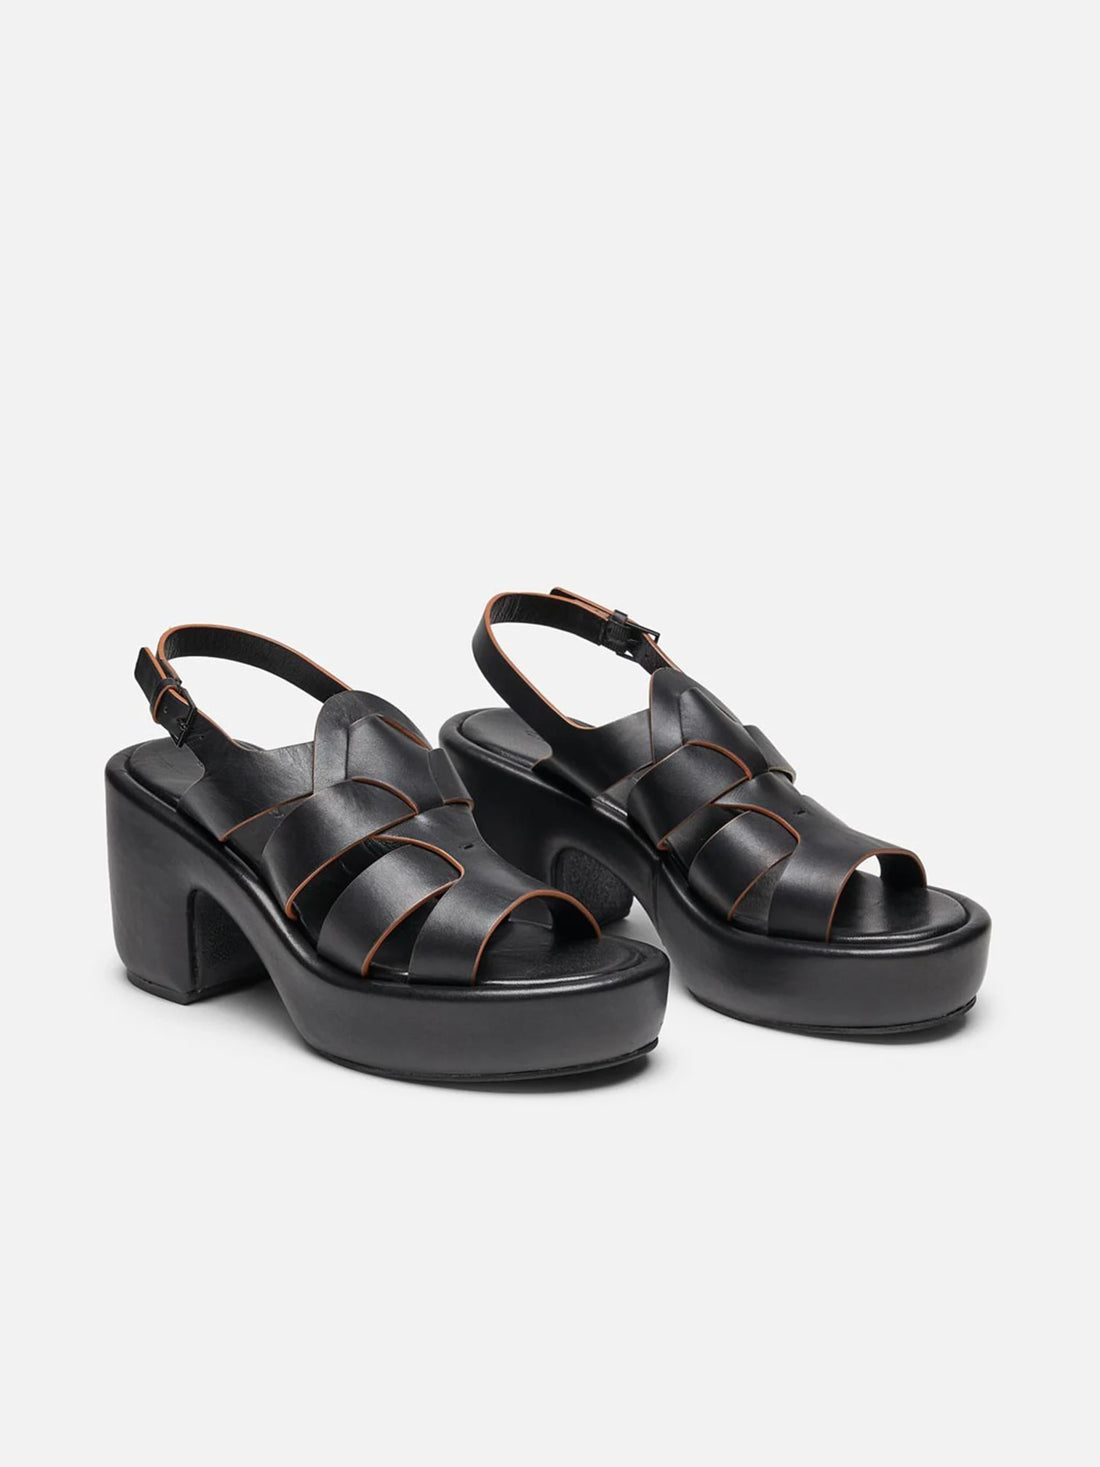 DIVINA sandals, black smooth calfskin || OUTLET